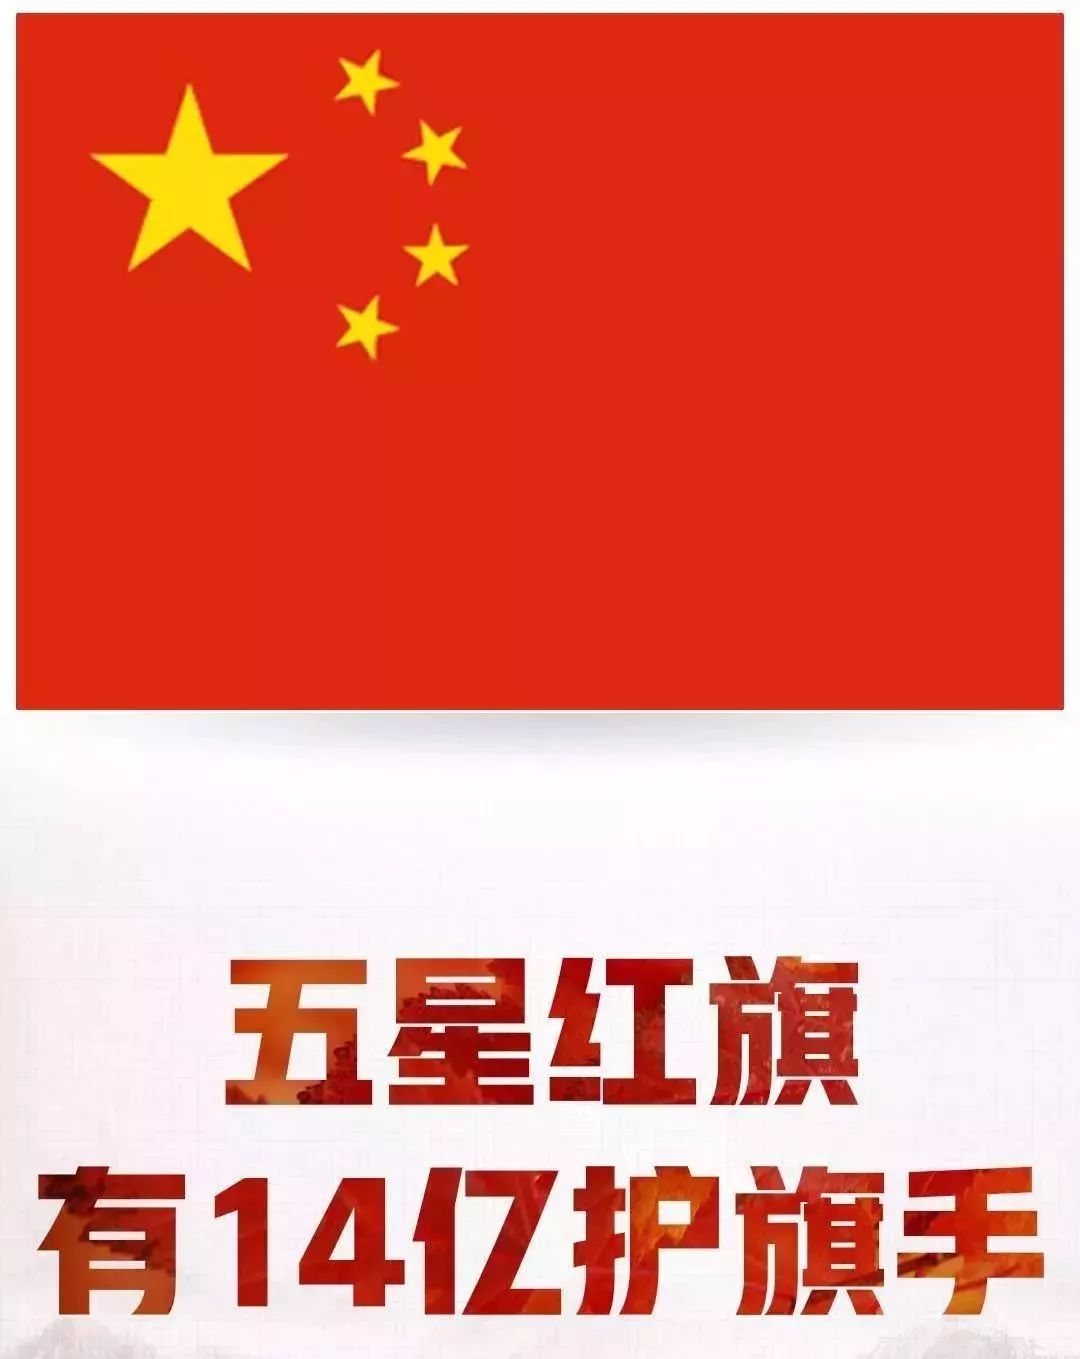 今天,五星红旗刷爆深圳人的朋友圈!请给我一面国旗 @微信官方